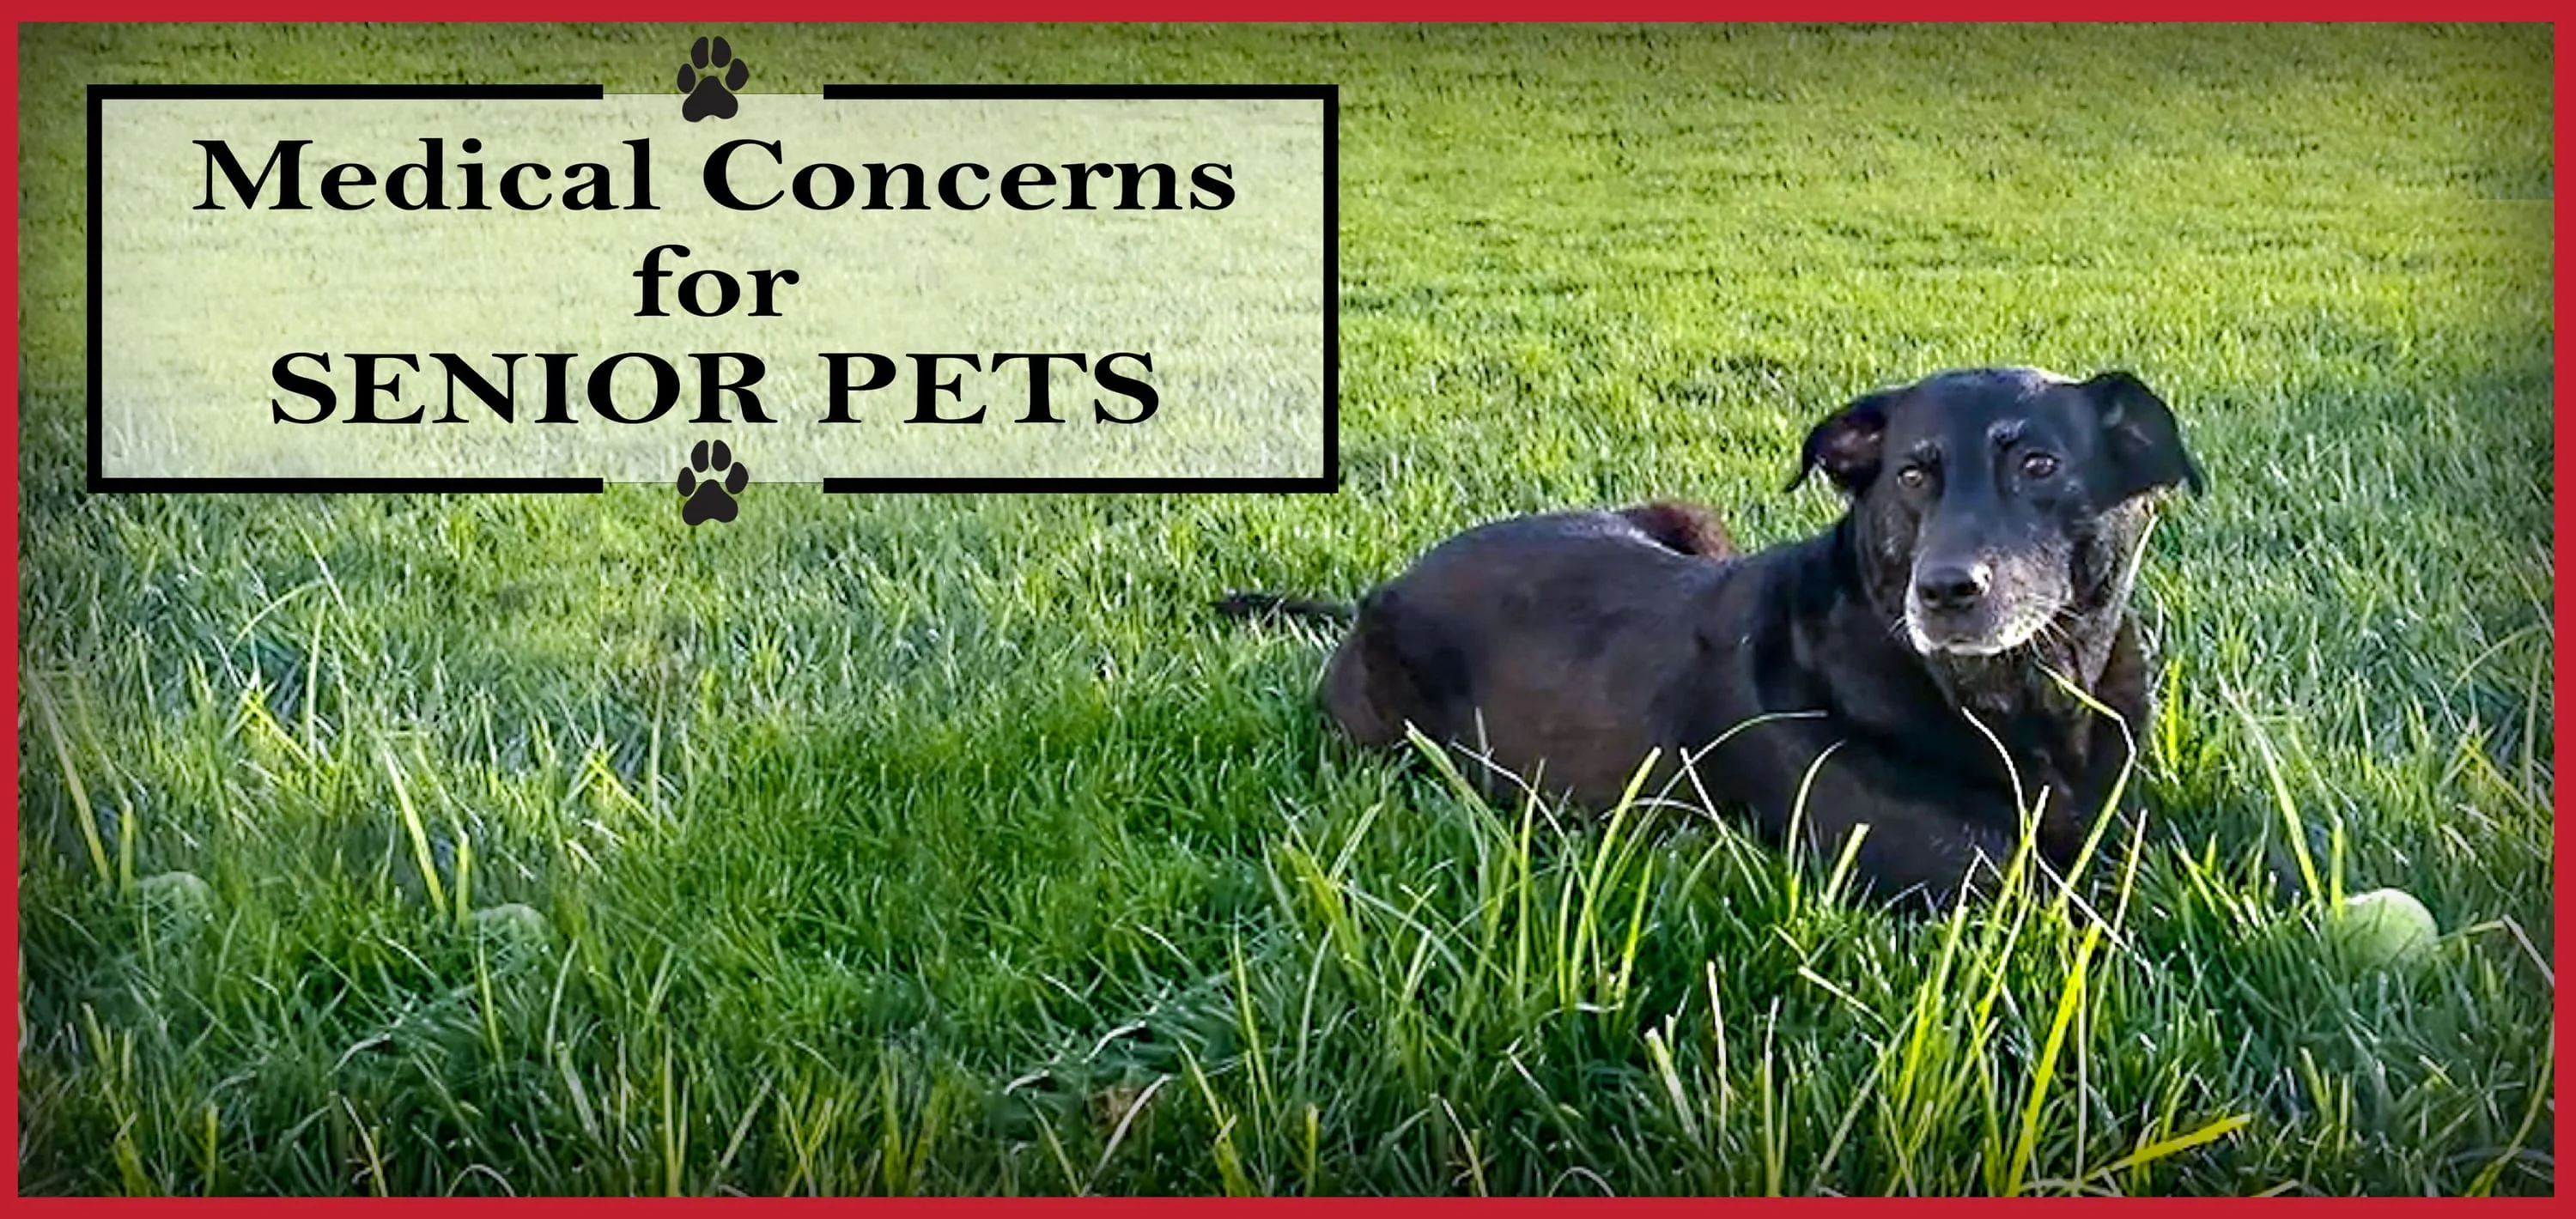 Medical Concerns for Senior Pets: Image of older black dog sitting in grass.